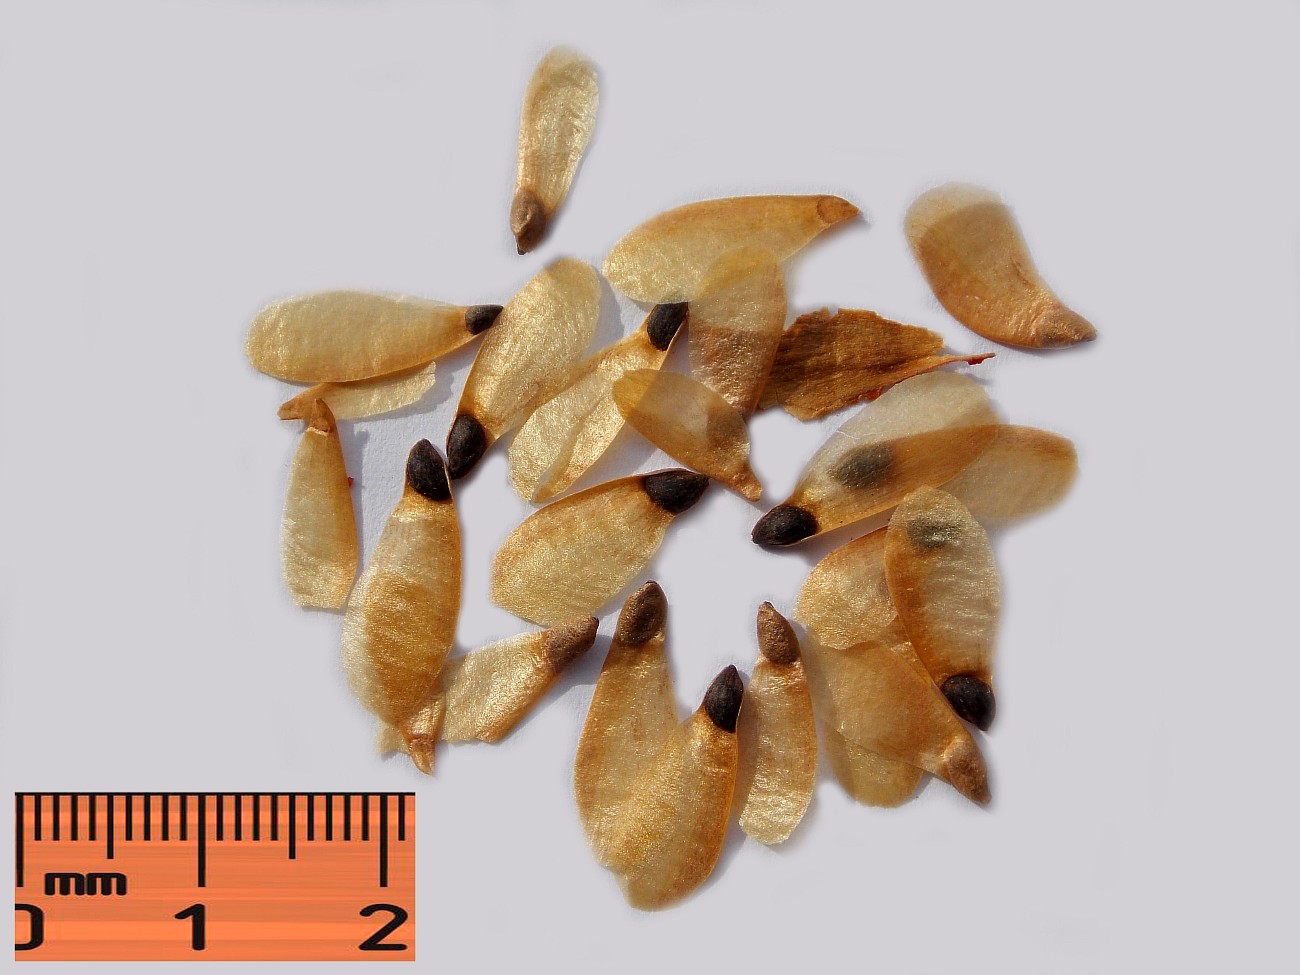 Image of Picea asperata specimen.